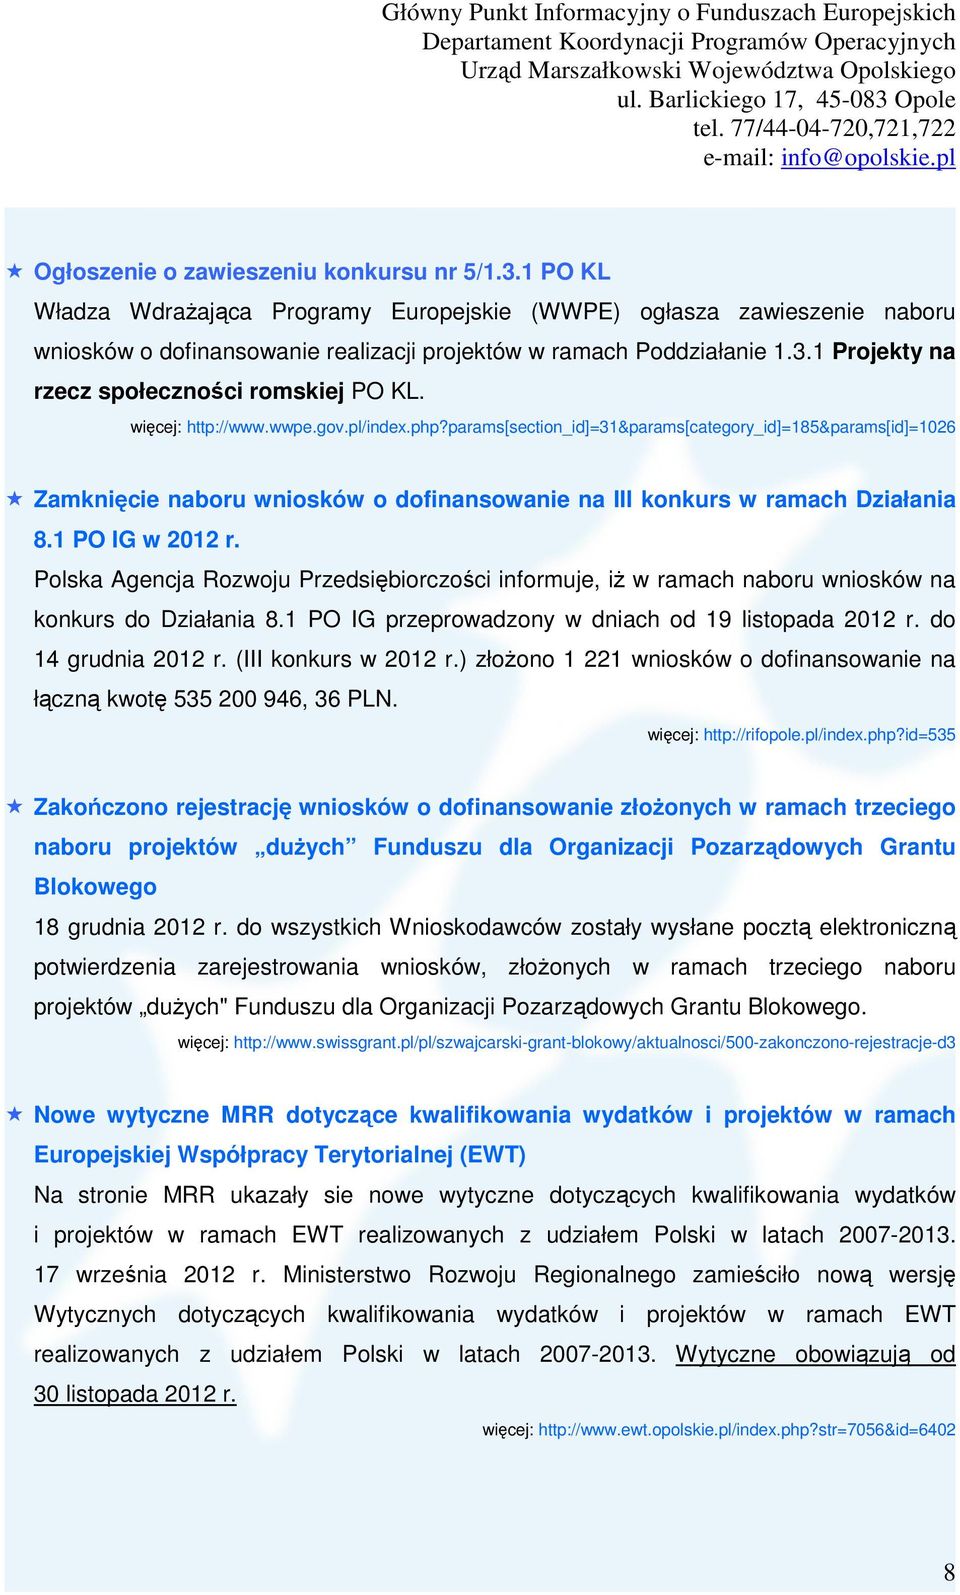 Polska Agencja Rozwoju Przedsiębiorczości informuje, iż w ramach naboru wniosków na konkurs do Działania 8.1 PO IG przeprowadzony w dniach od 19 listopada 2012 r. do 14 grudnia 2012 r.